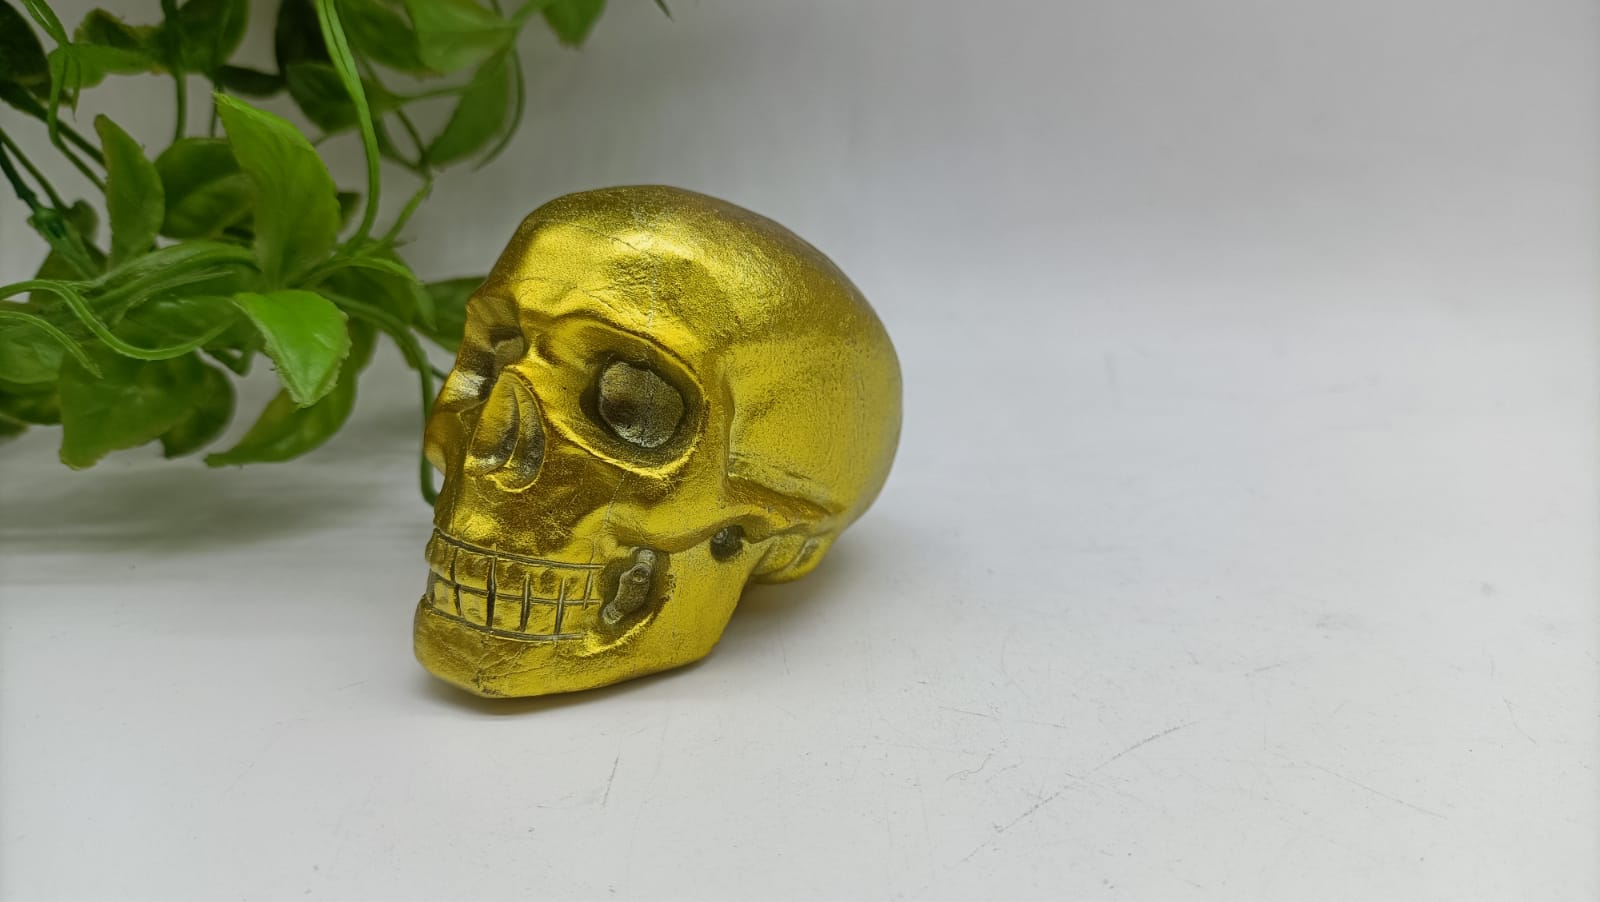 Golden Aura Skull 547g 8x6x5cm

